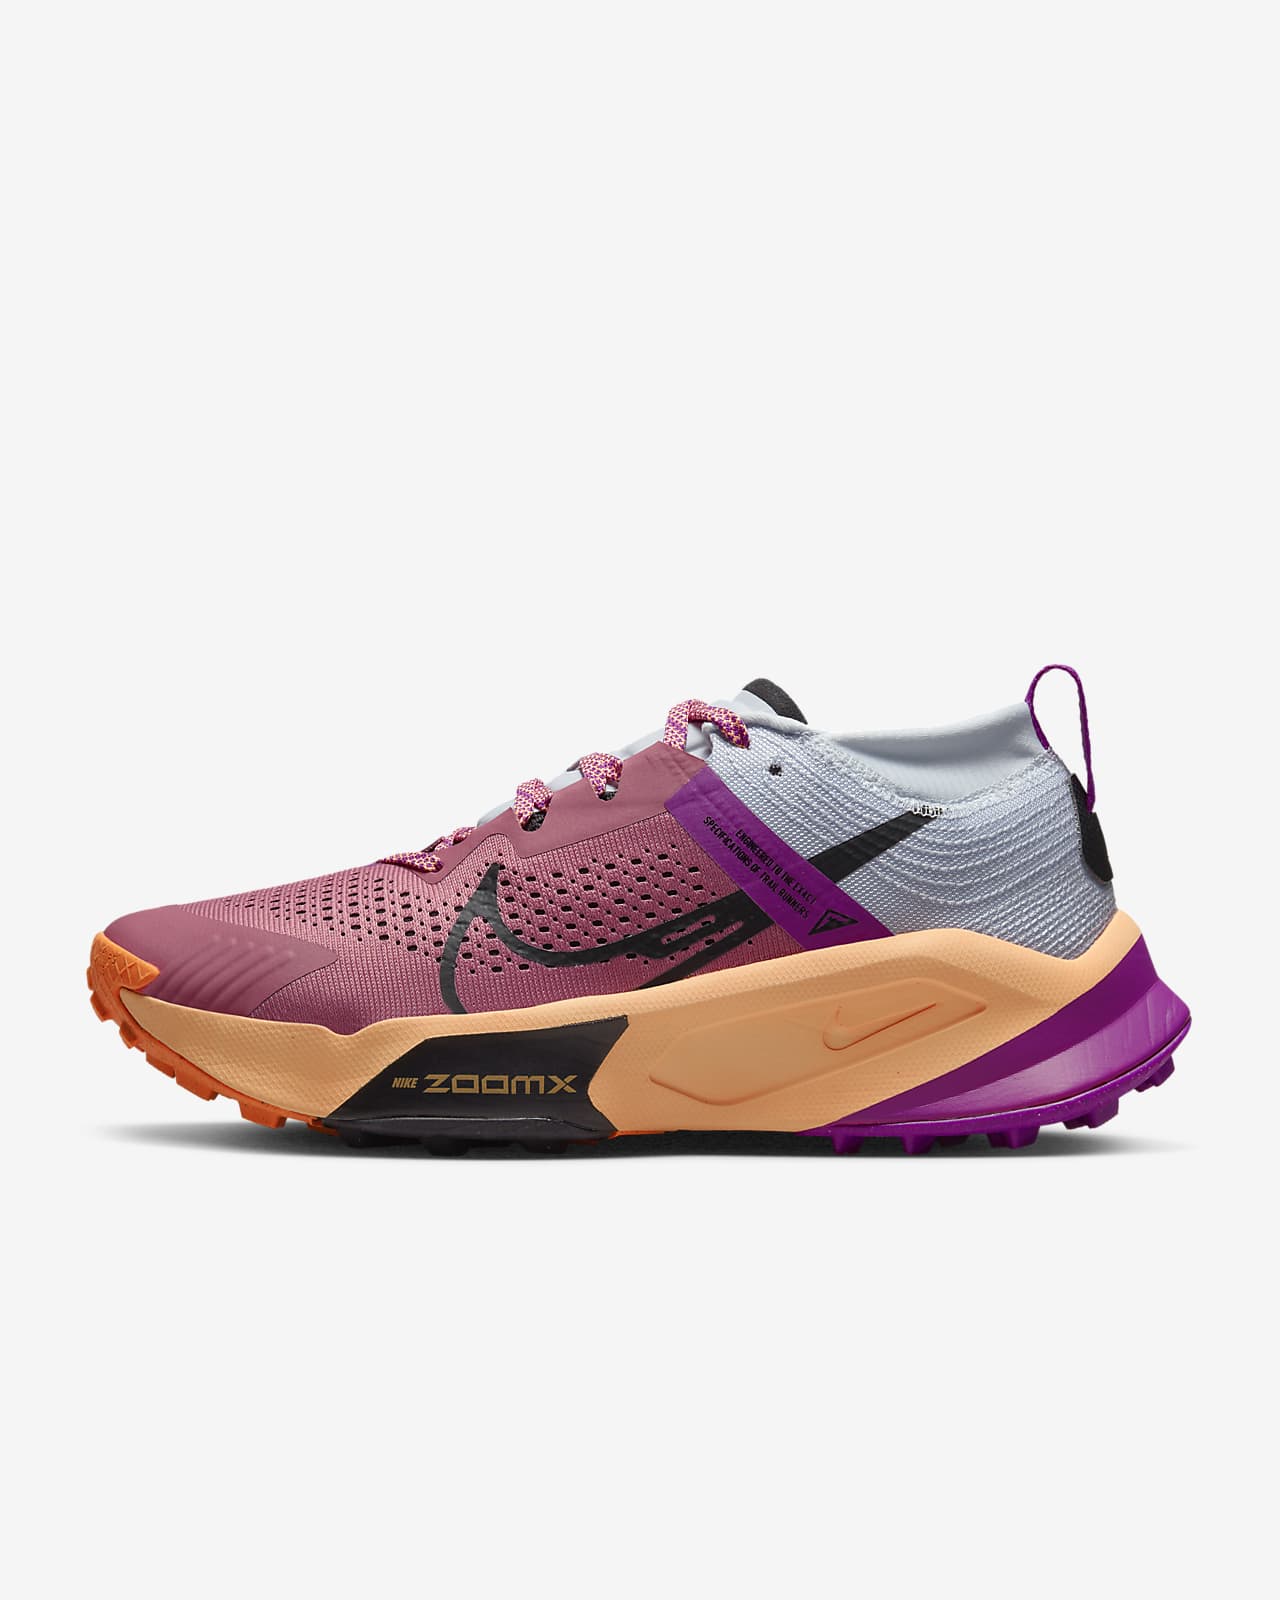 Nike ZoomX Zegama Women's Trail Running Shoes